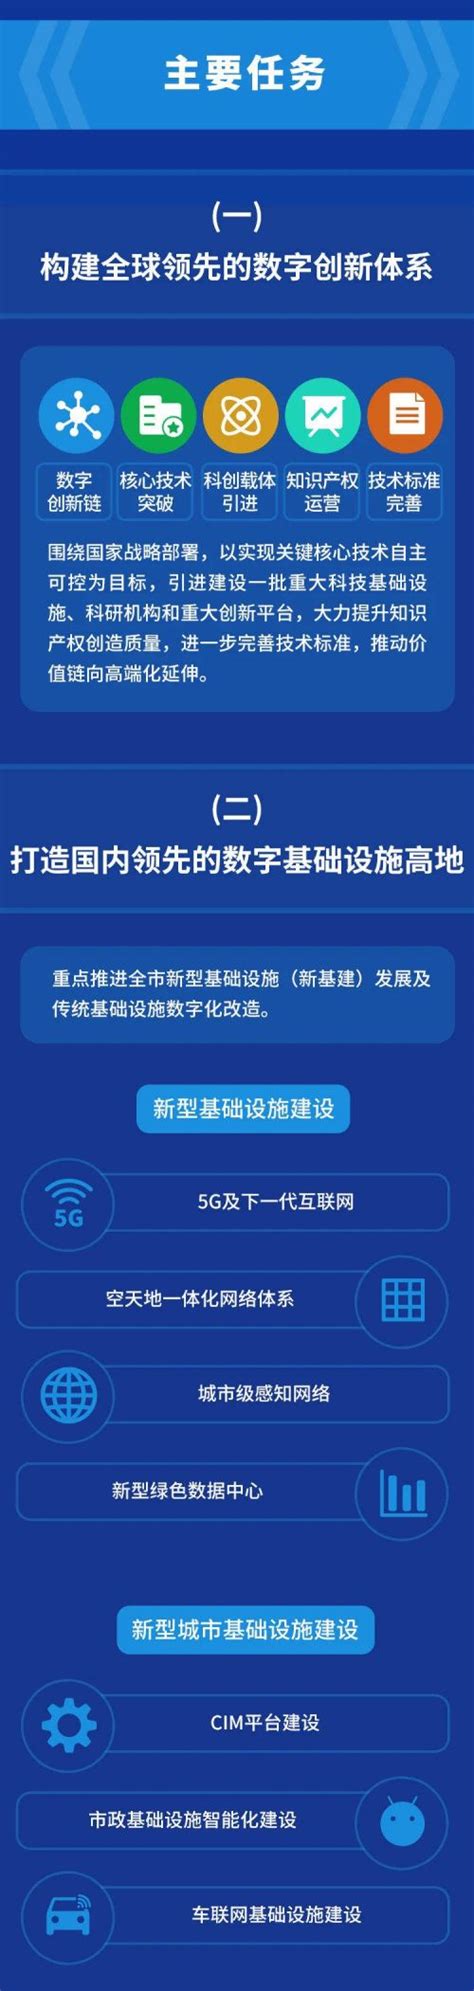 图解|苏州市推进数字经济和数字化发展三年行动计划（2021-2023年）_中国发展网